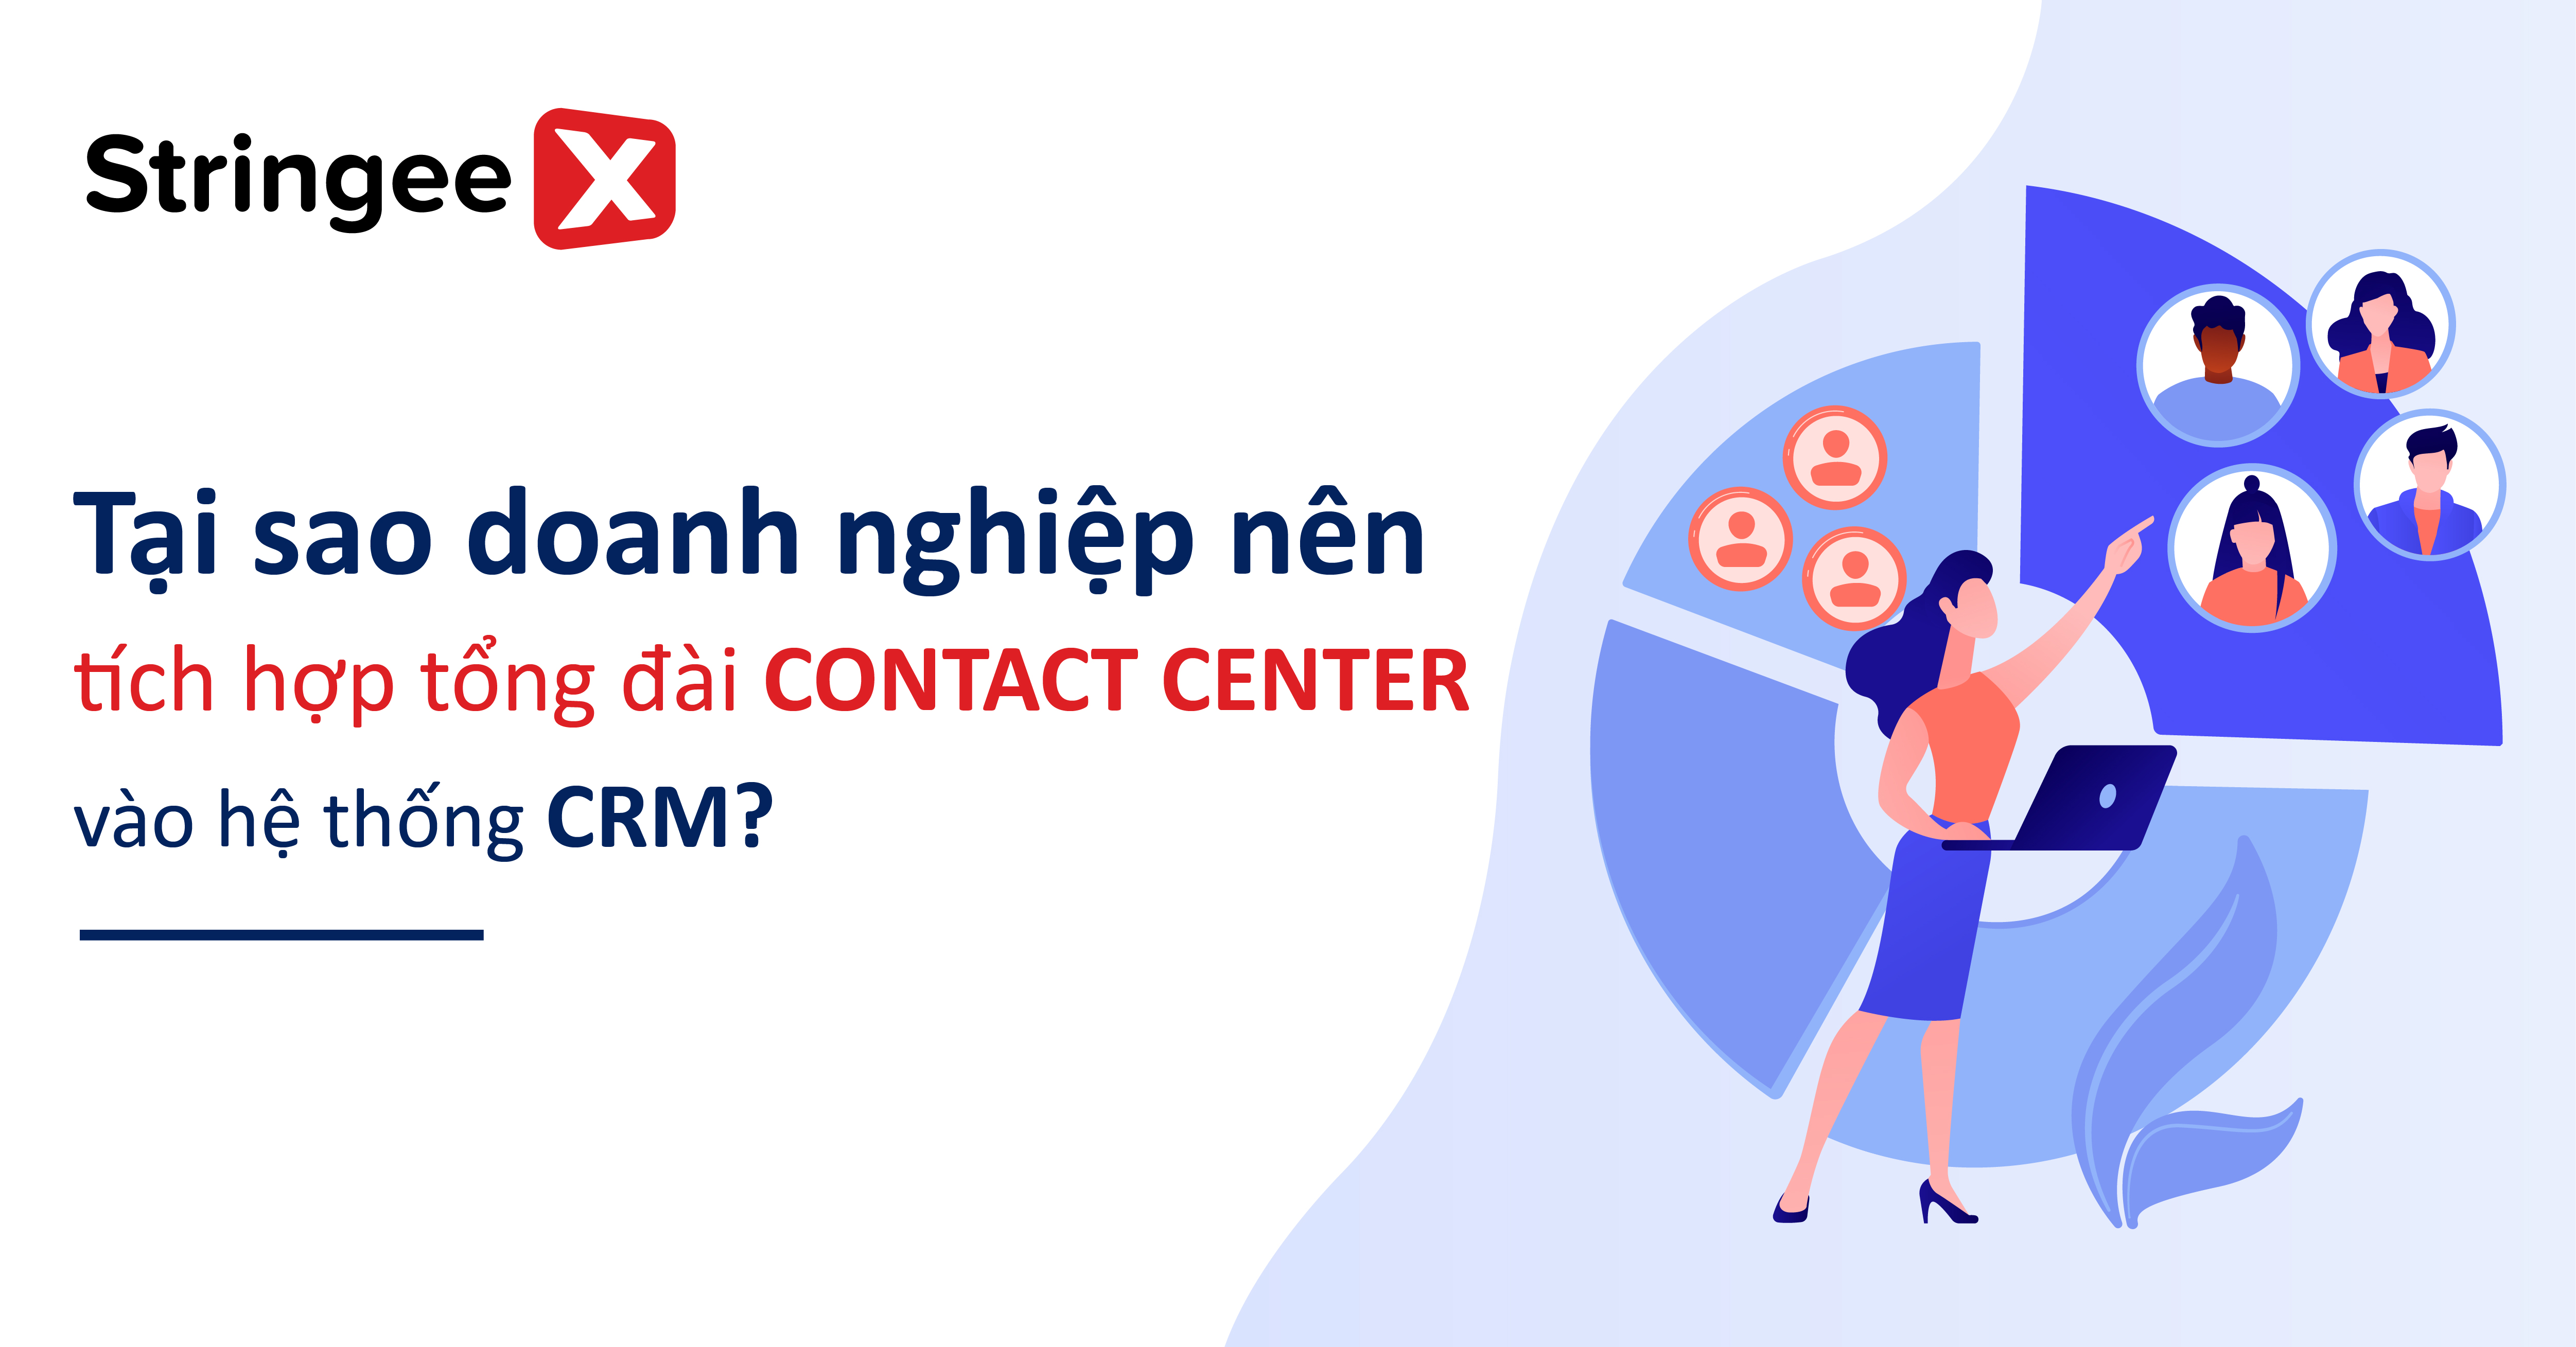 Tại sao doanh nghiệp nên tích hợp tổng đài contact center vào hệ thống CRM?